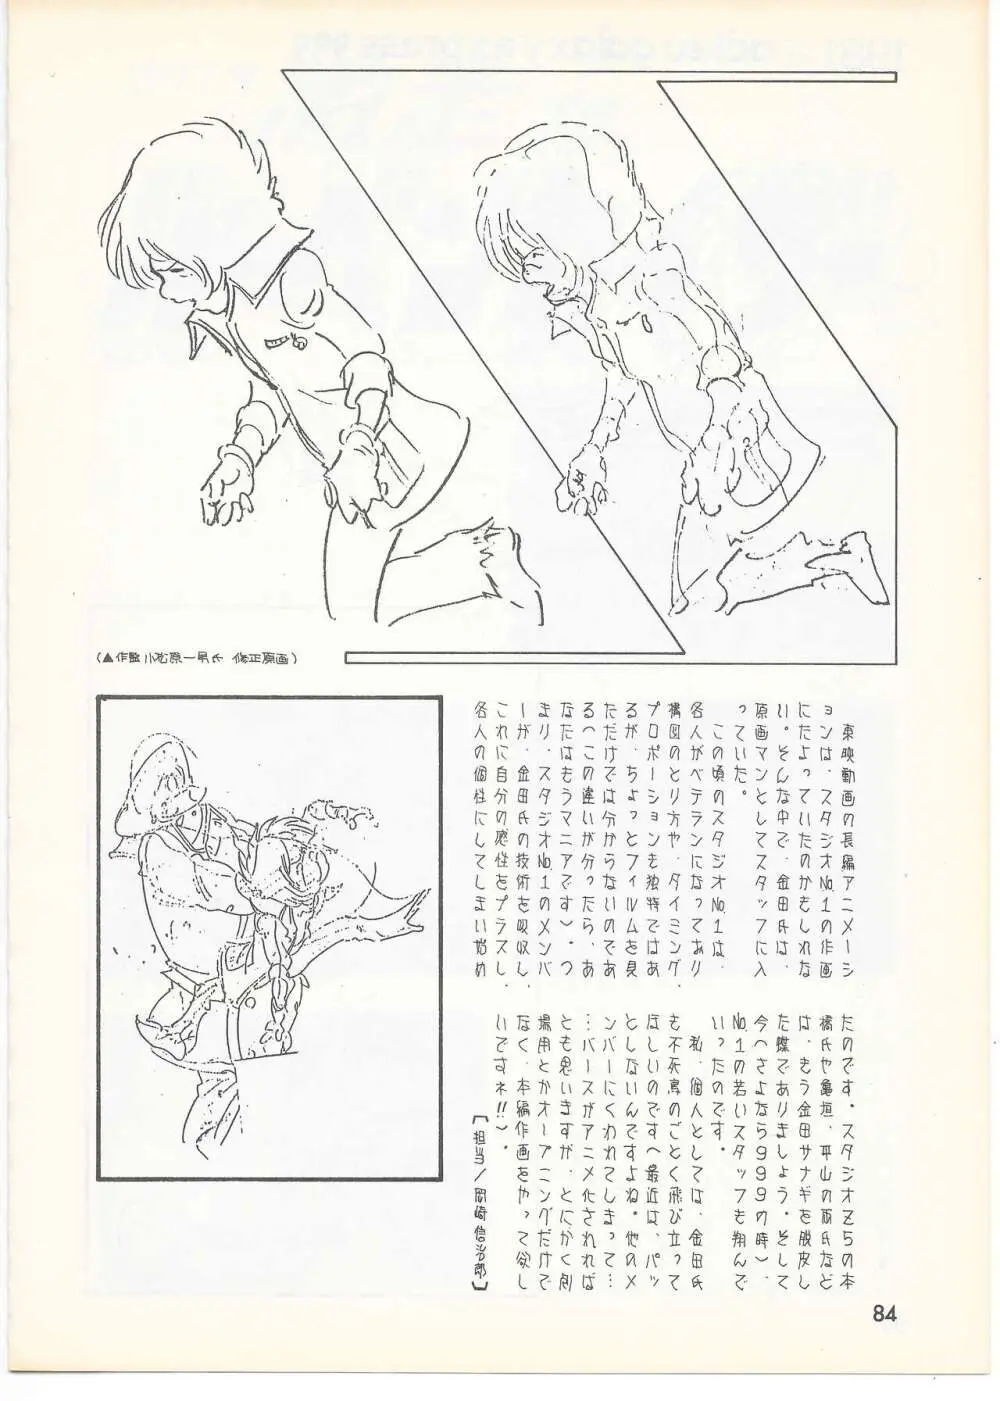 THE ANIMATOR 1 金田伊功特集号 81ページ